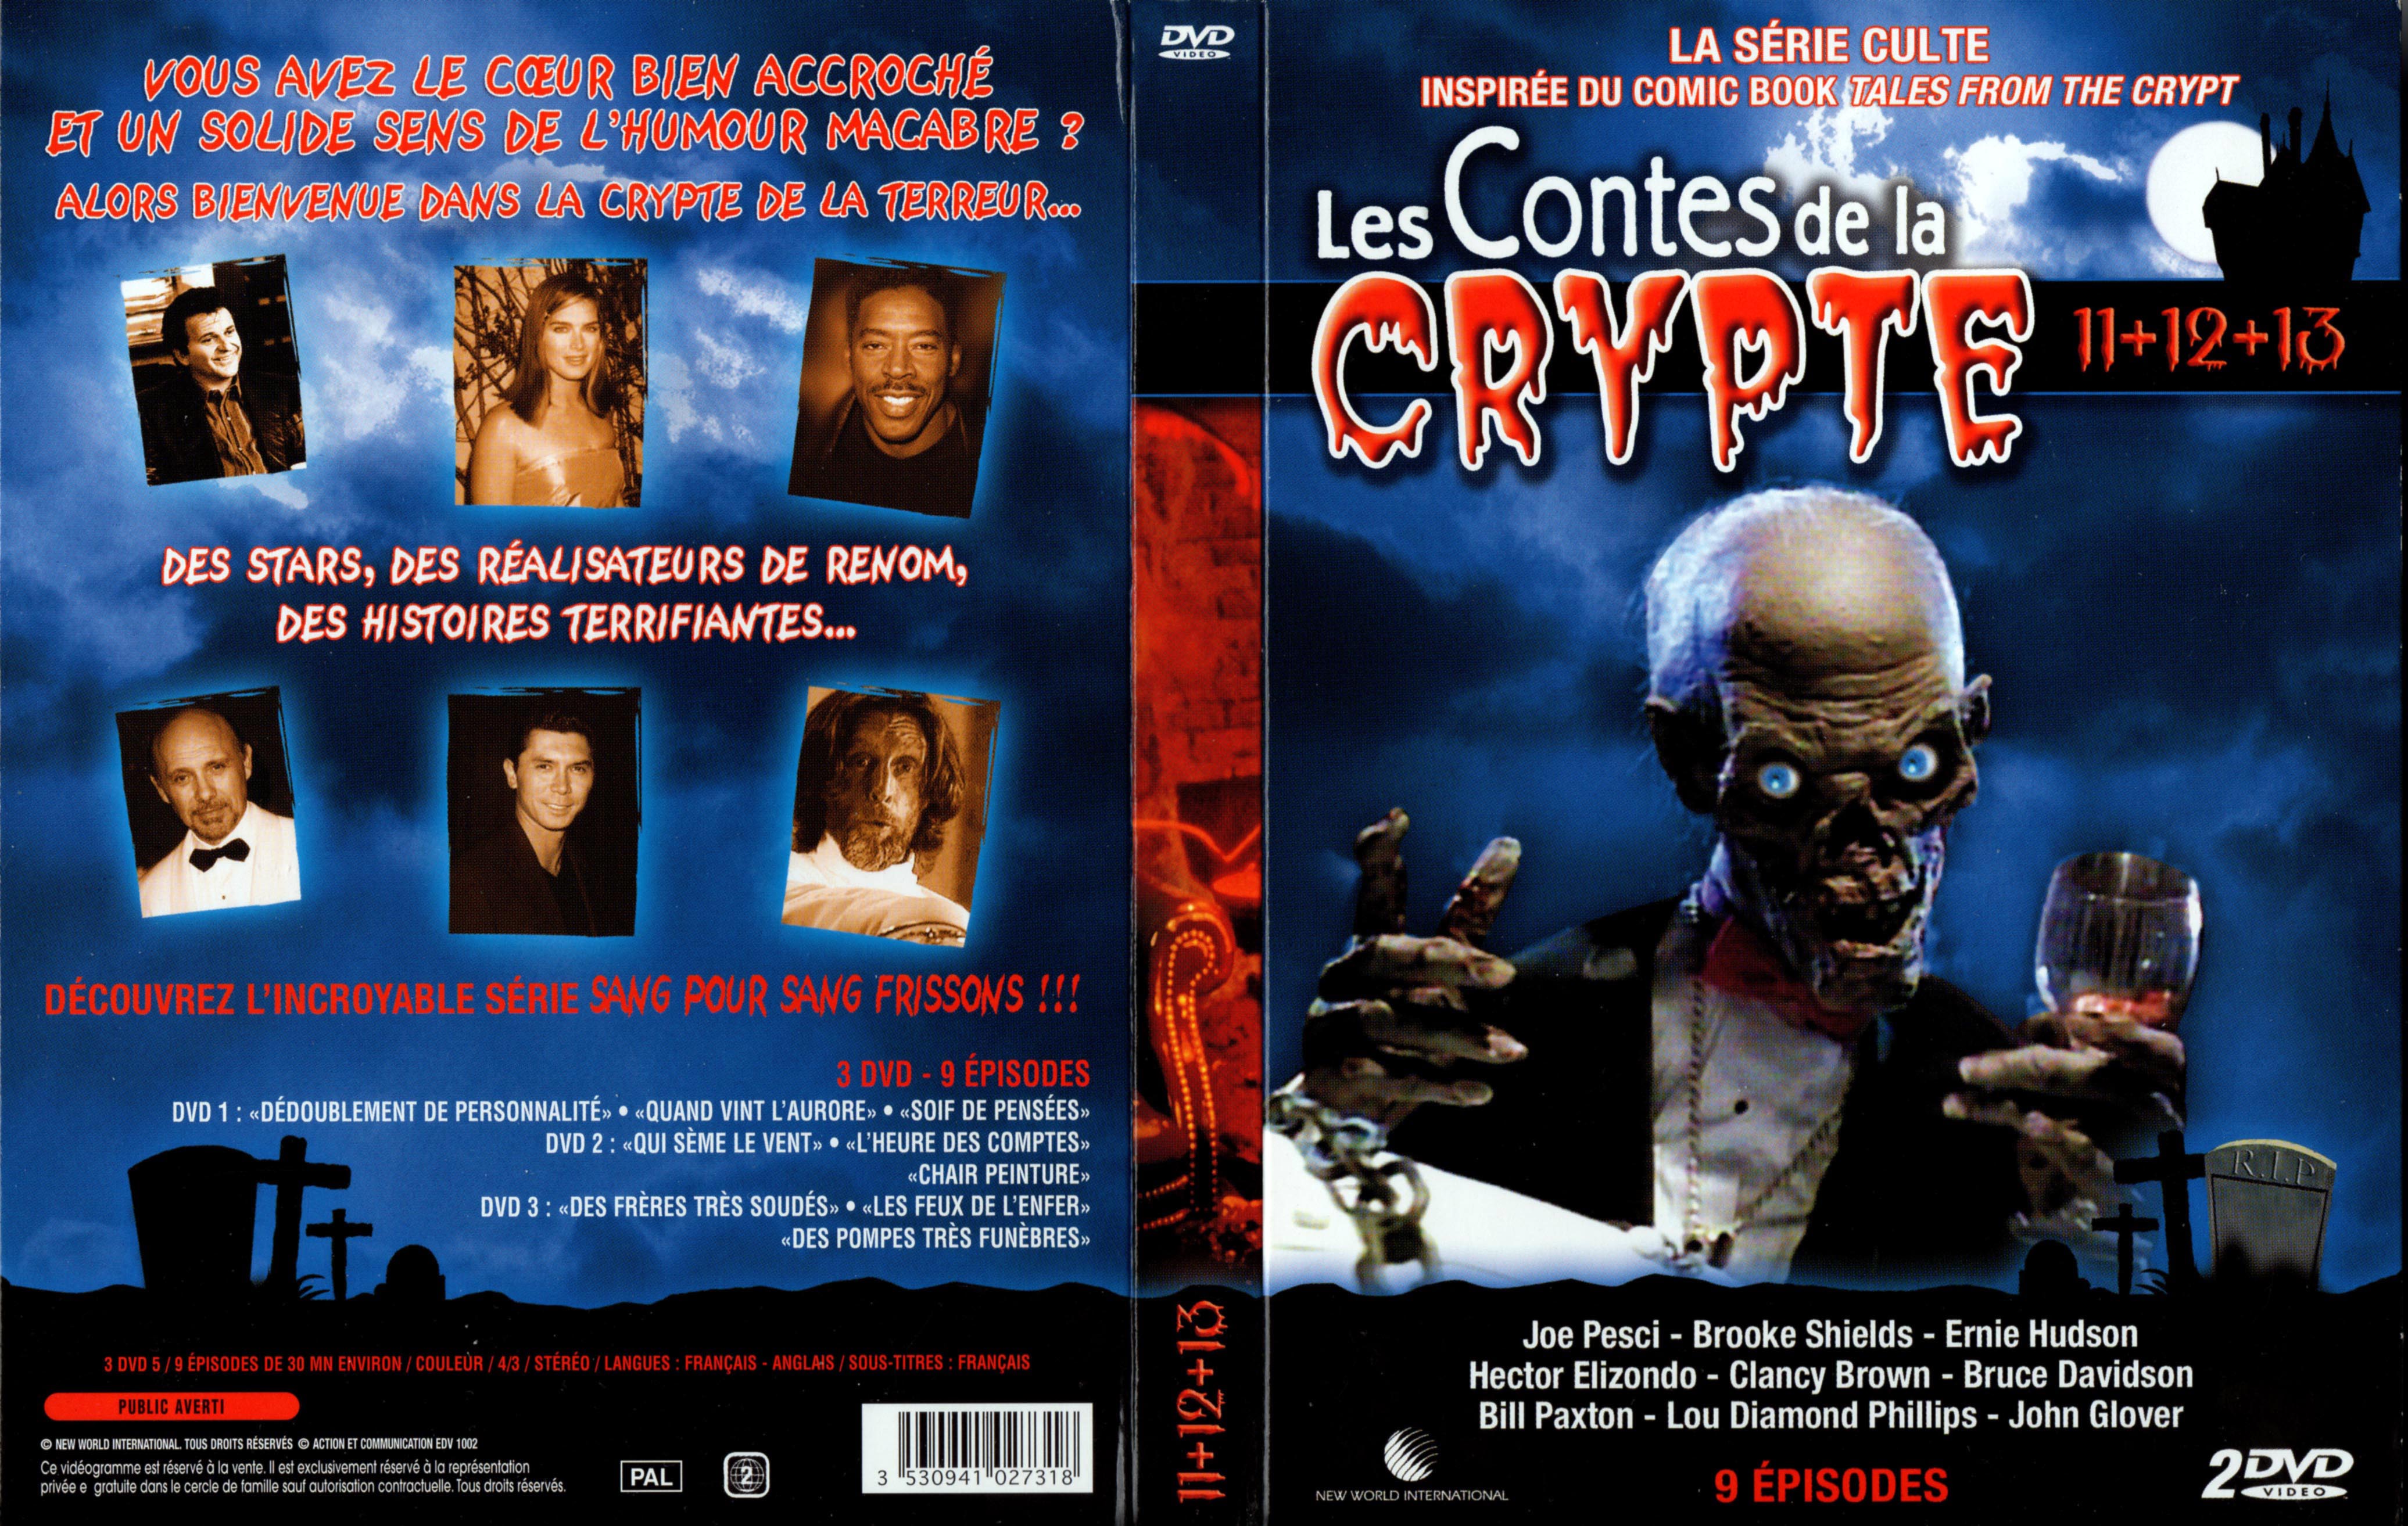 Jaquette DVD Les contes de la crypte Vol 11 12 et 13